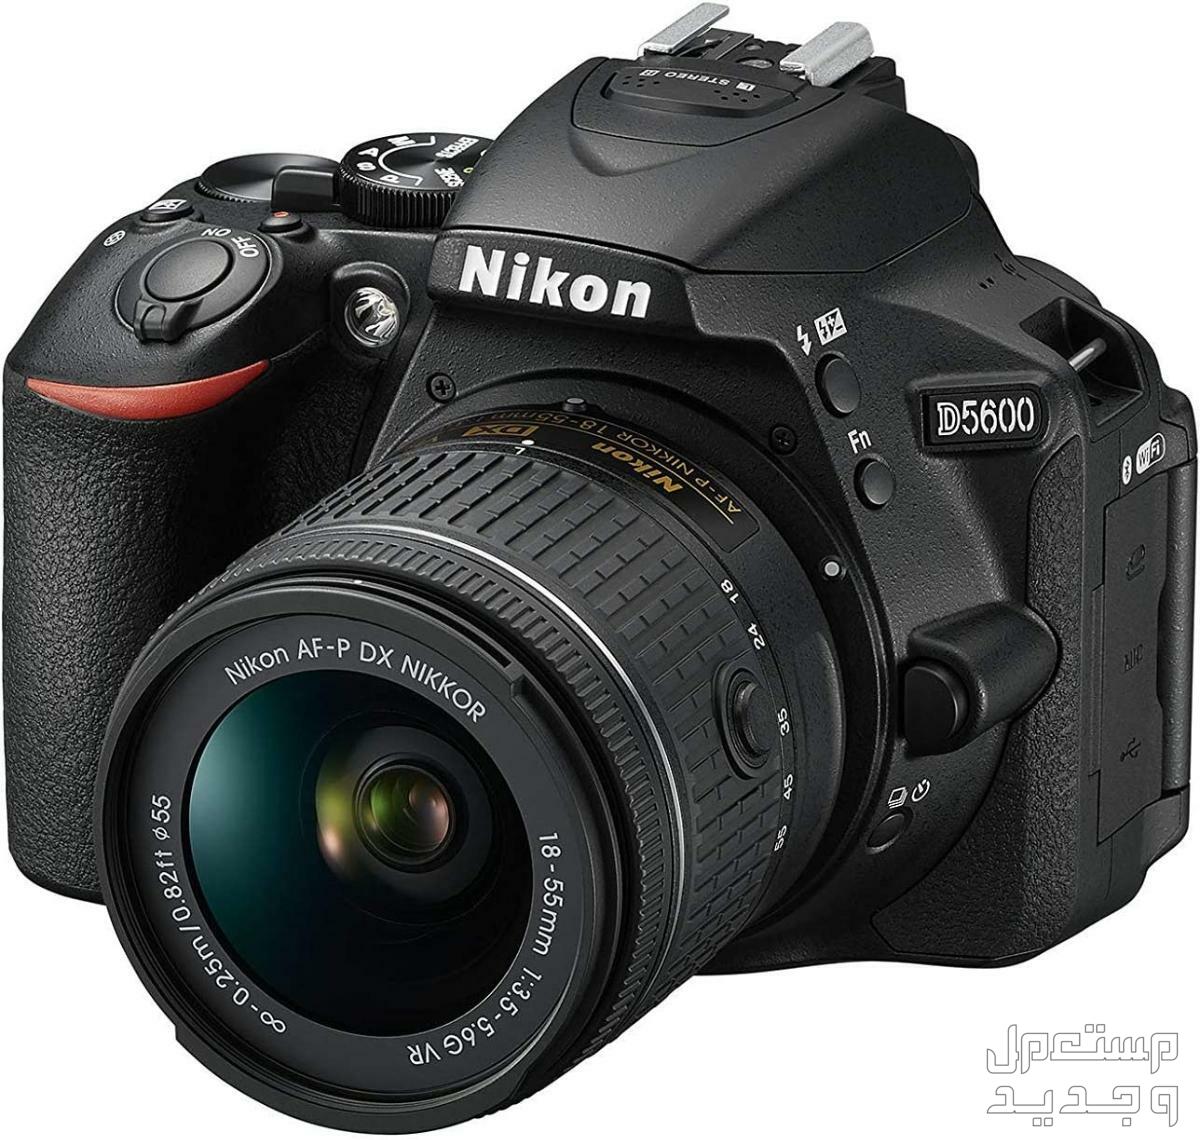 10 كاميرات تصوير ماركات عالمية بأسعار رخيصة كاميرا Nikon D5600